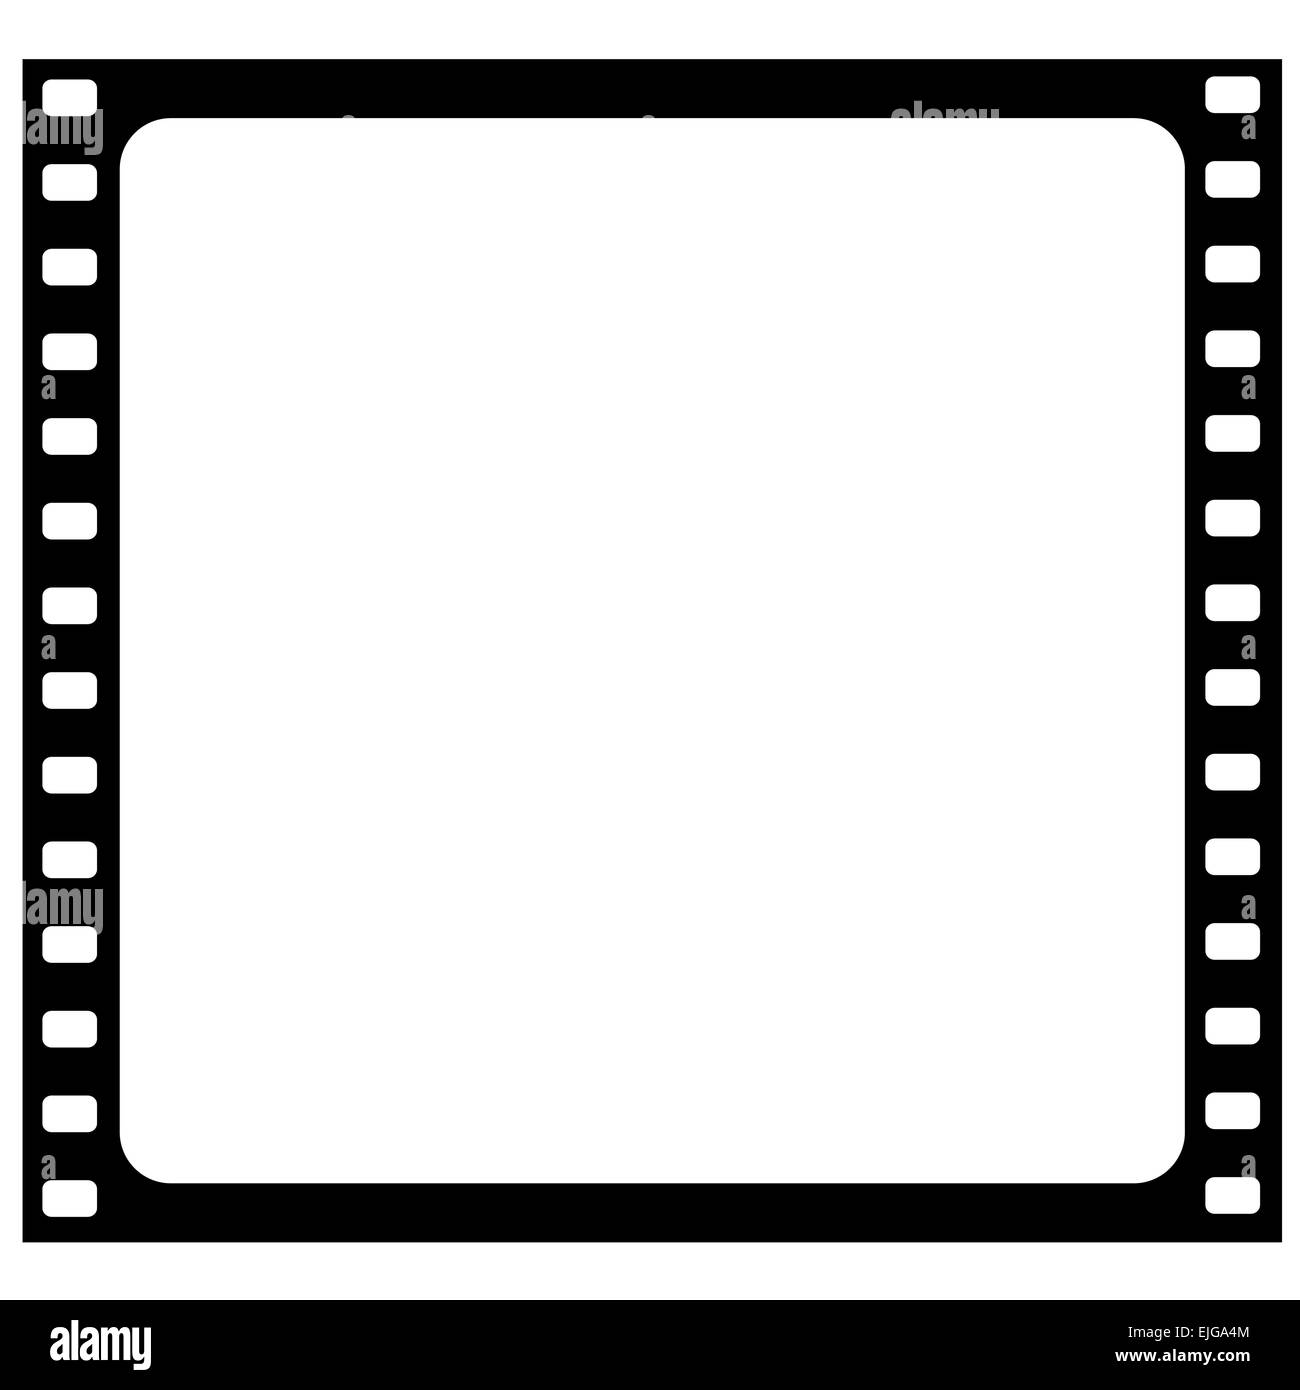 Abbildung von der Film-Frame - Vektor Stock Vektor